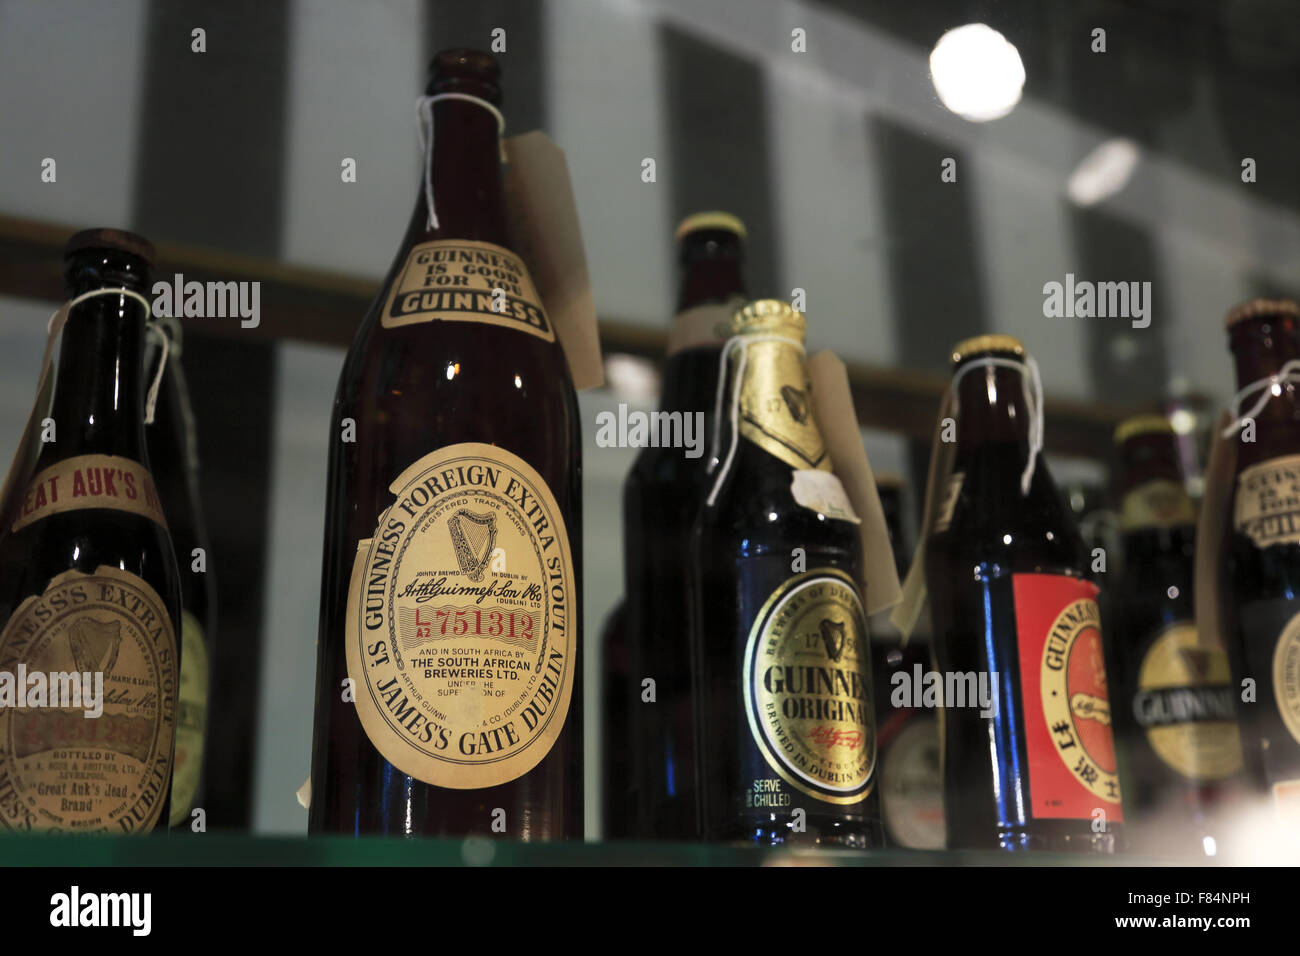 Différents types de bouteilles de bière Guinness afficher dans l'Entrepôt Guinness.Dublin.L'Irlande Banque D'Images